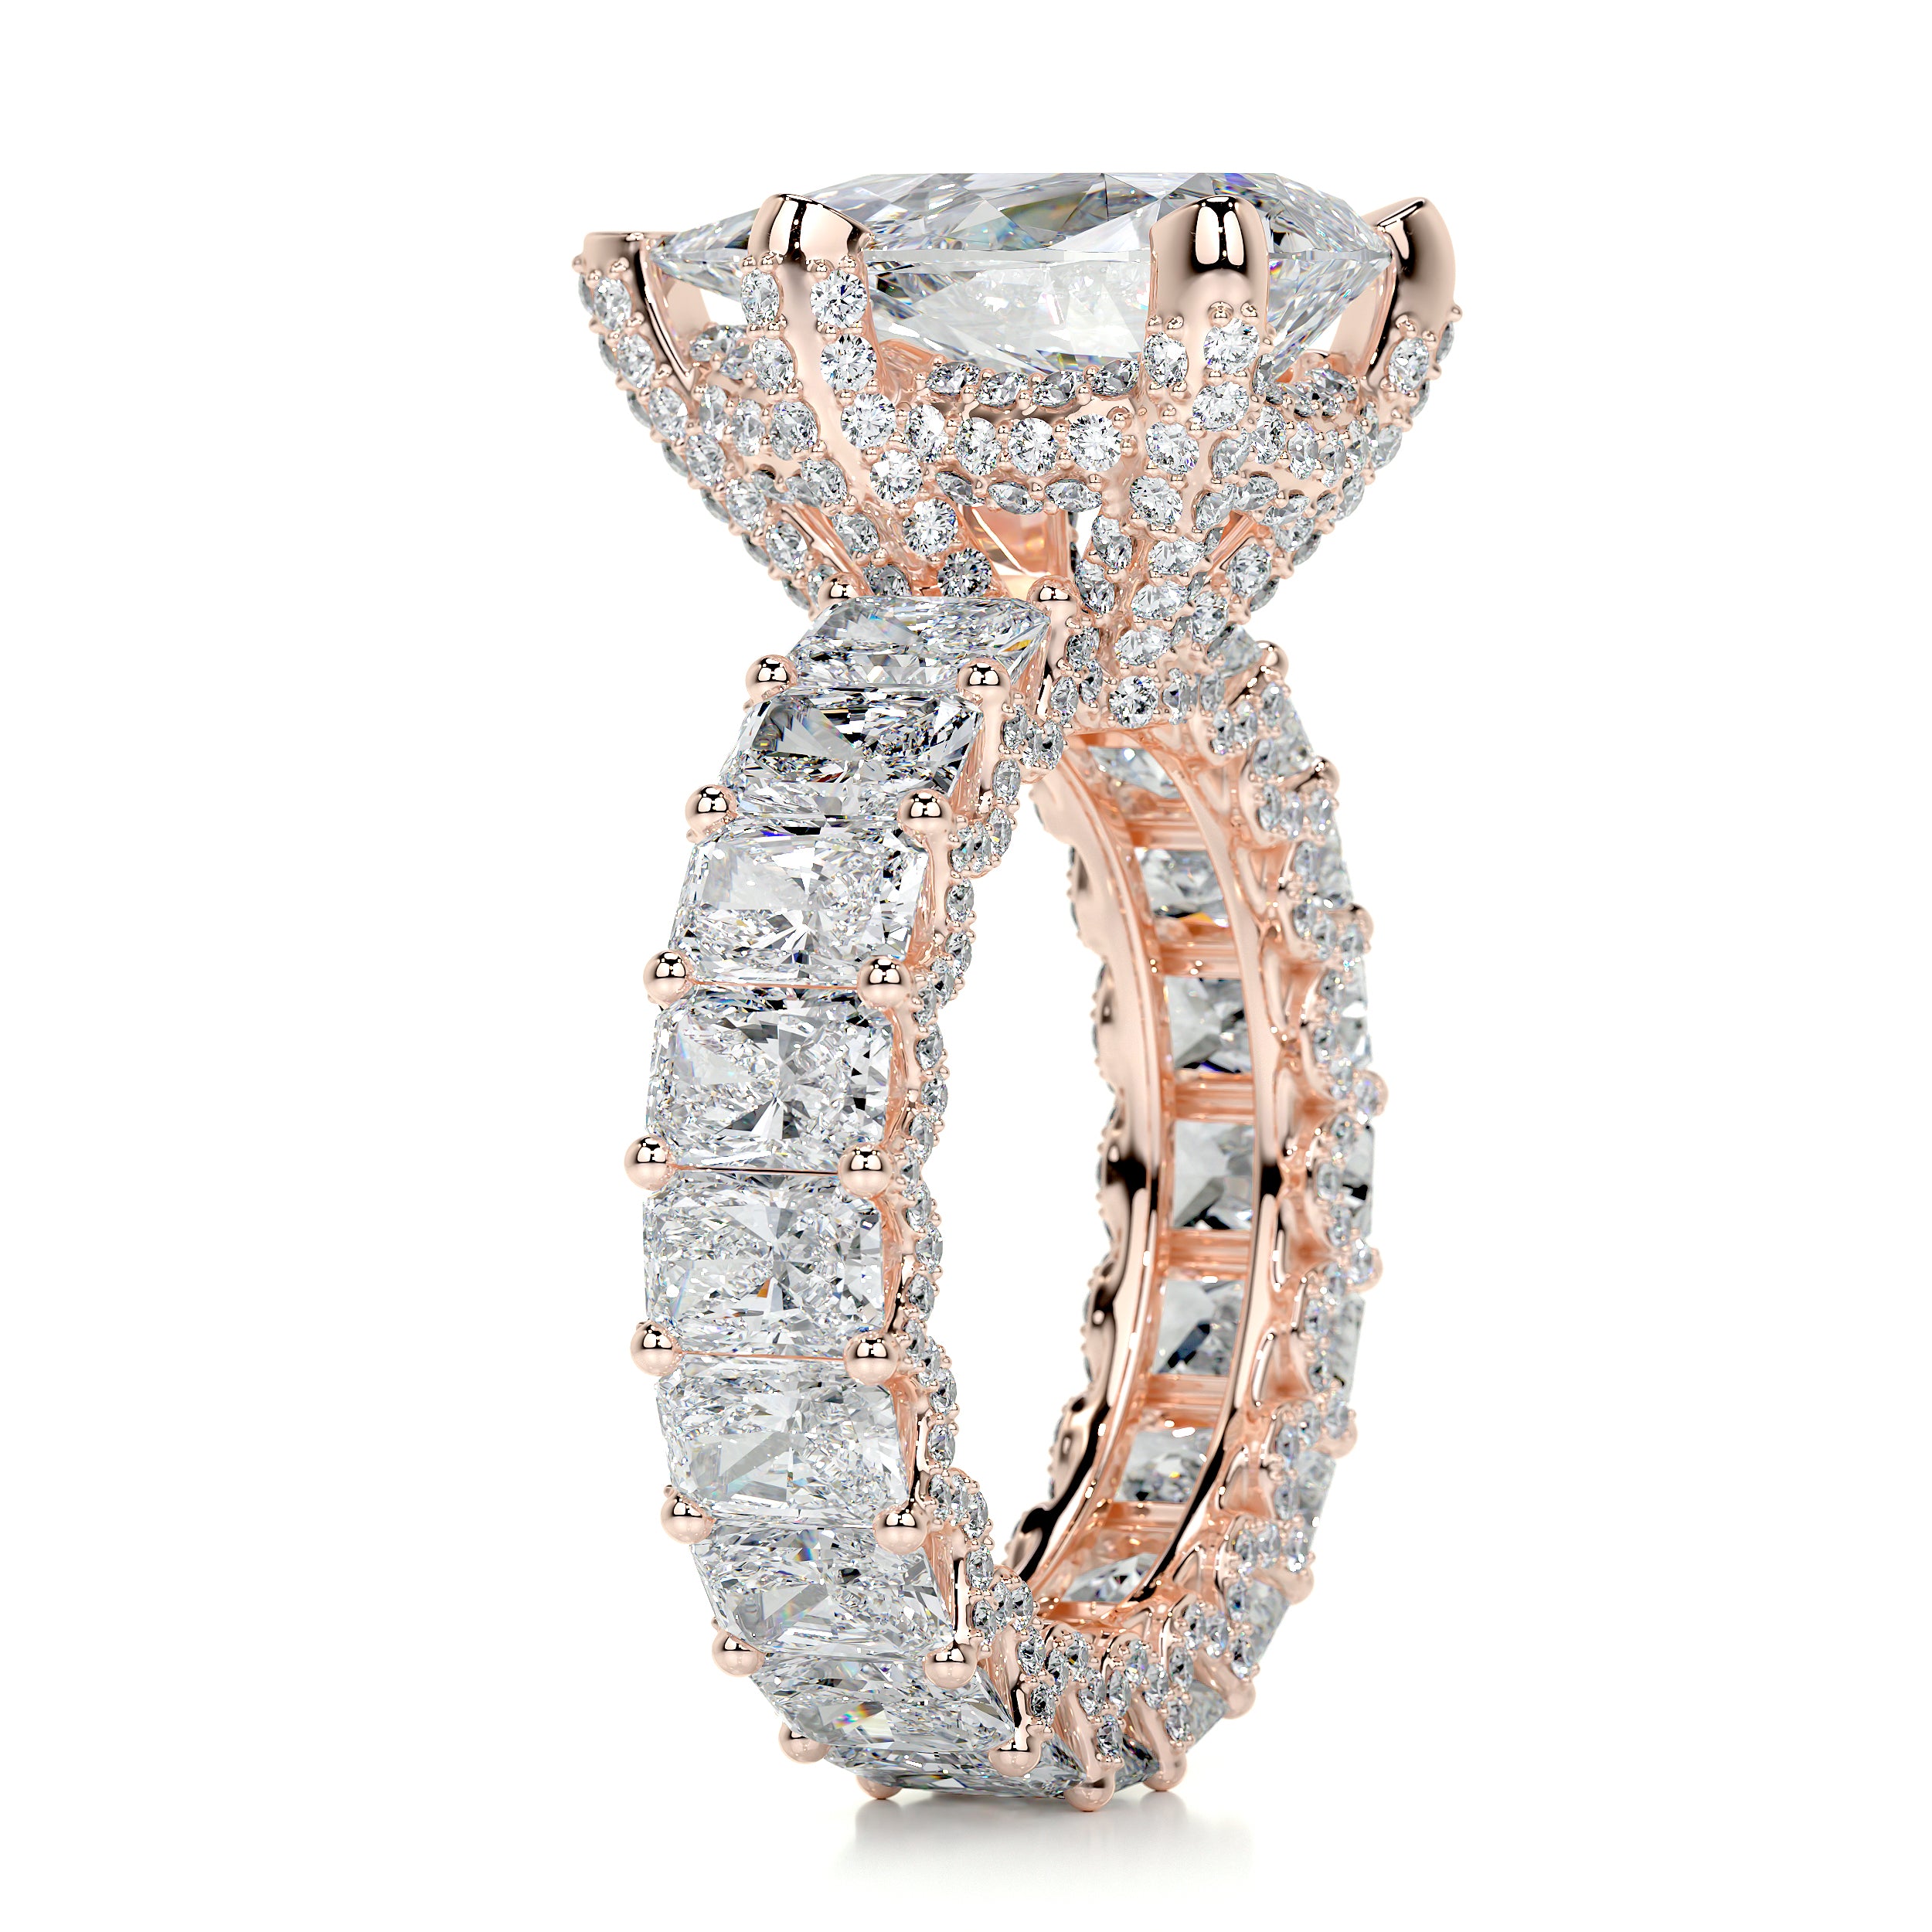 Arabella Diamond Engagement Ring   (8 Carat) -14K Rose Gold